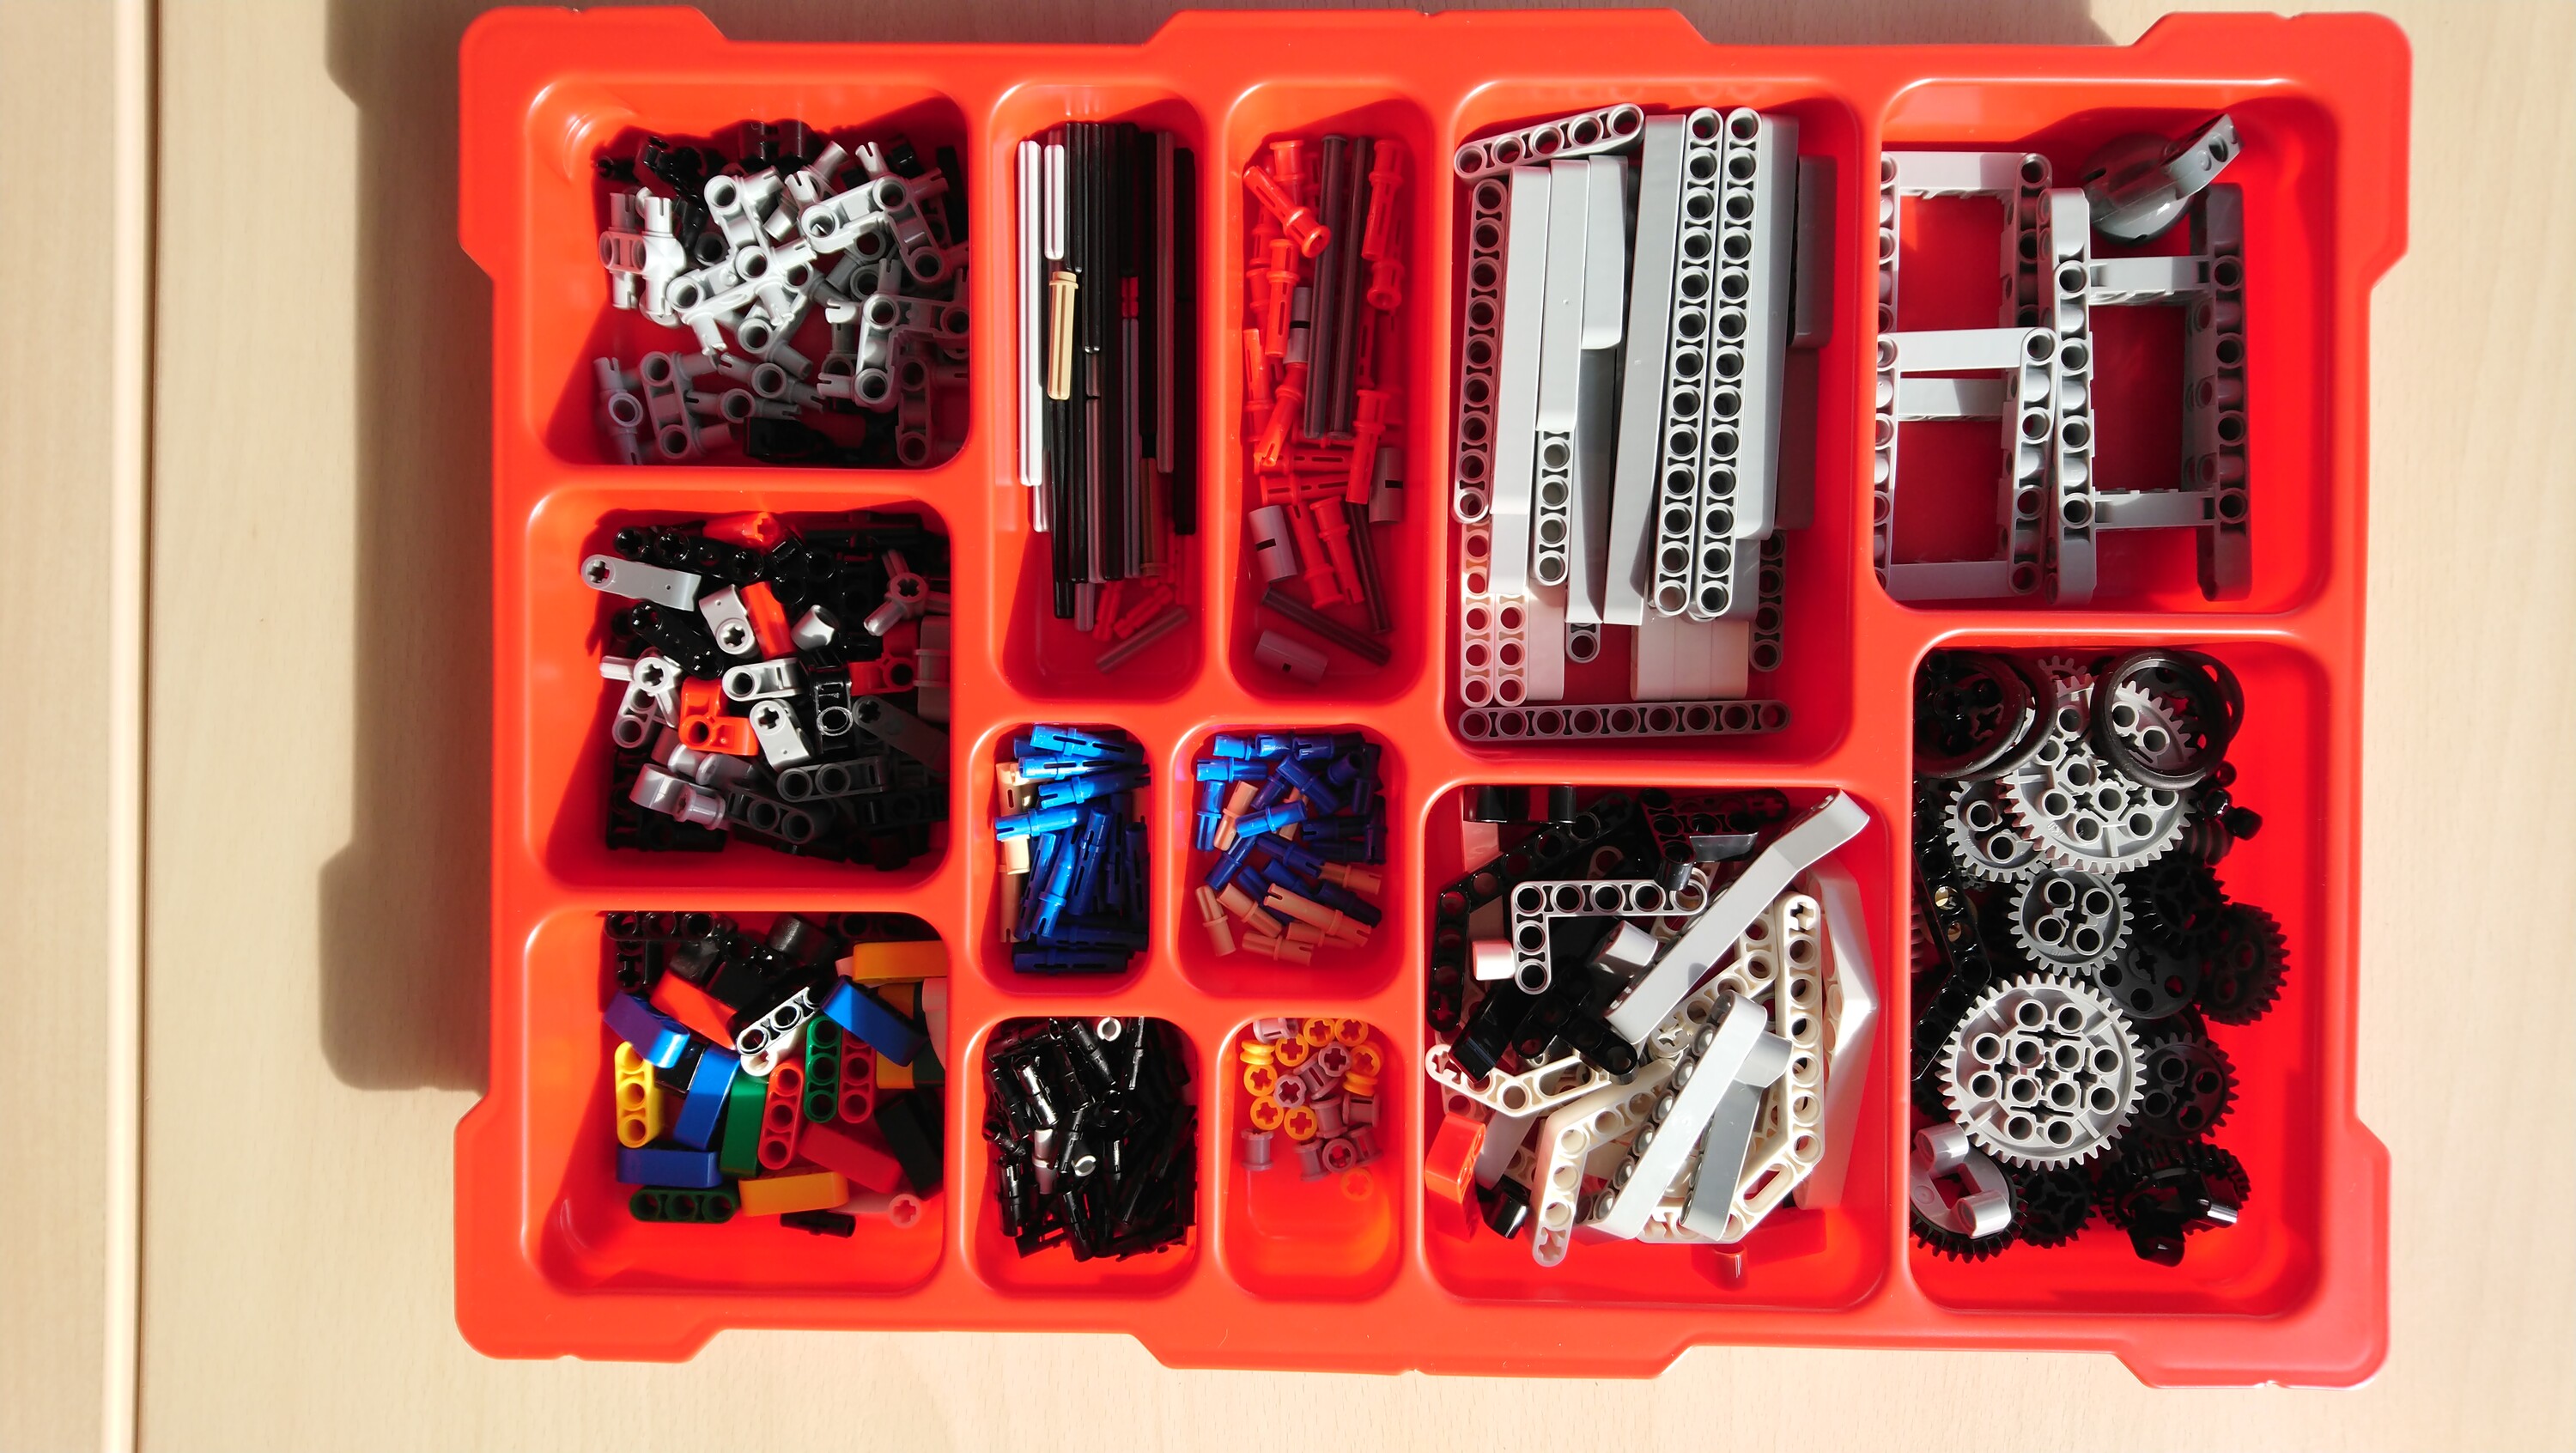 ... Lego Mindstorm ... Foto: V. Sasse